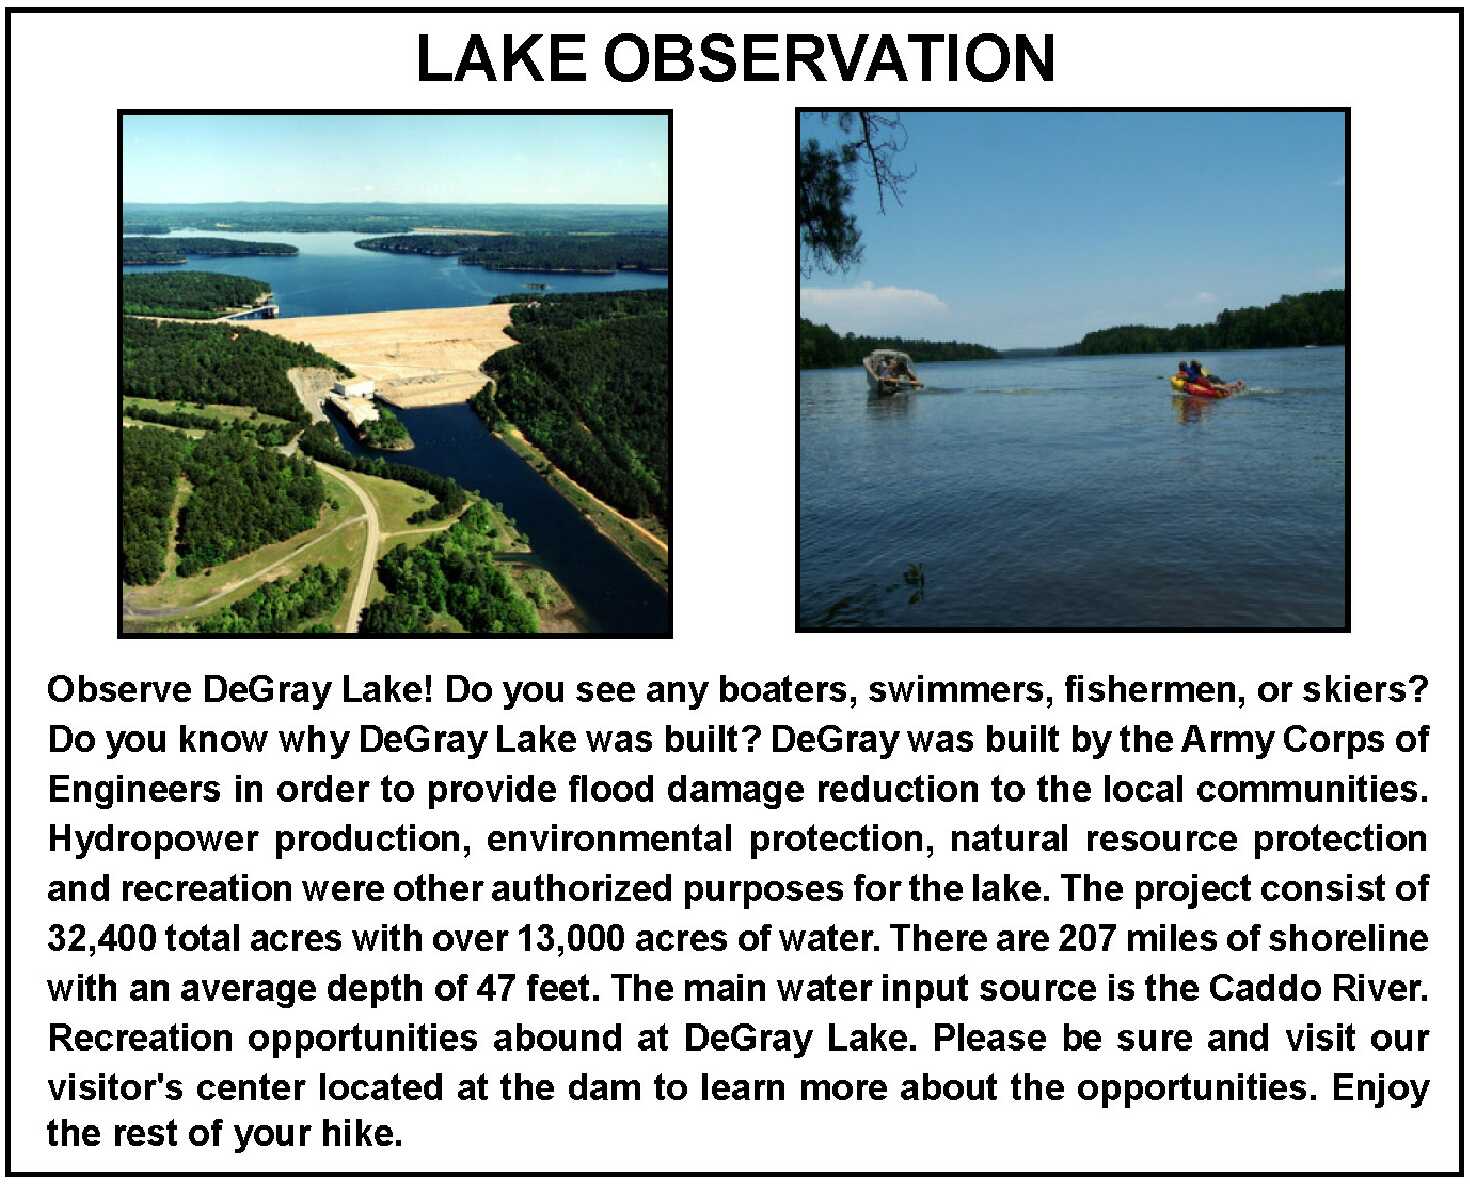 DeGray Lake